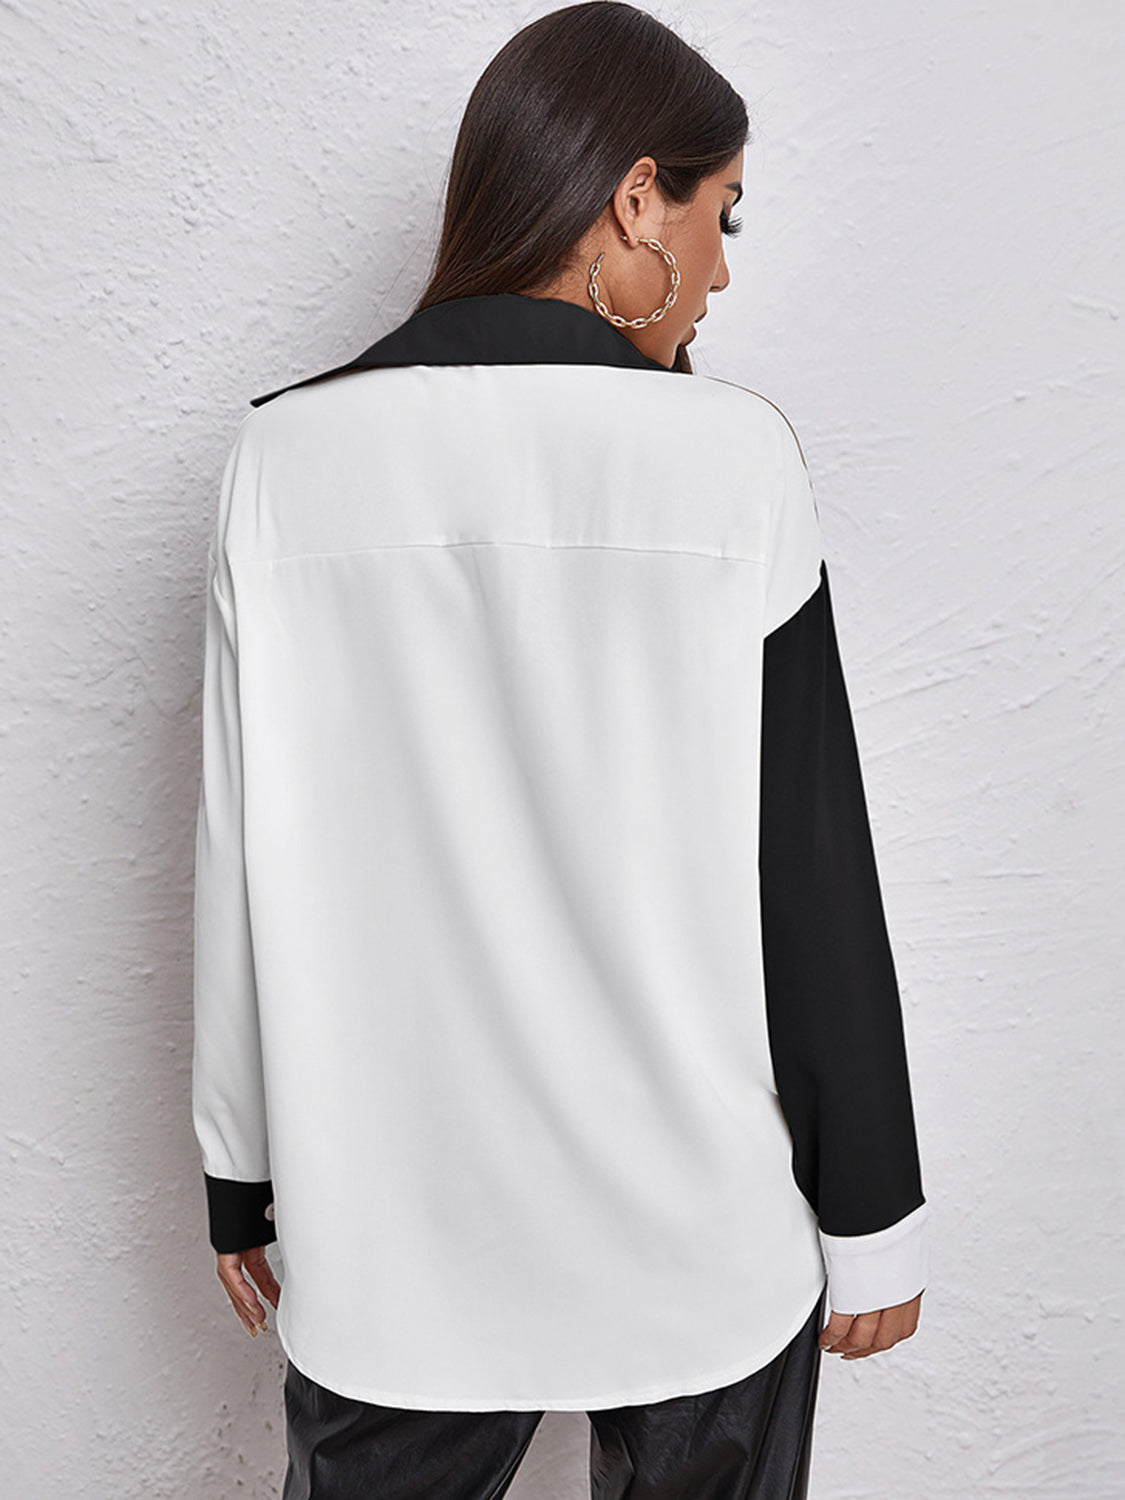 TEEK - Black Contrasted Long Sleeve Shirt TOPS TEEK Trend   